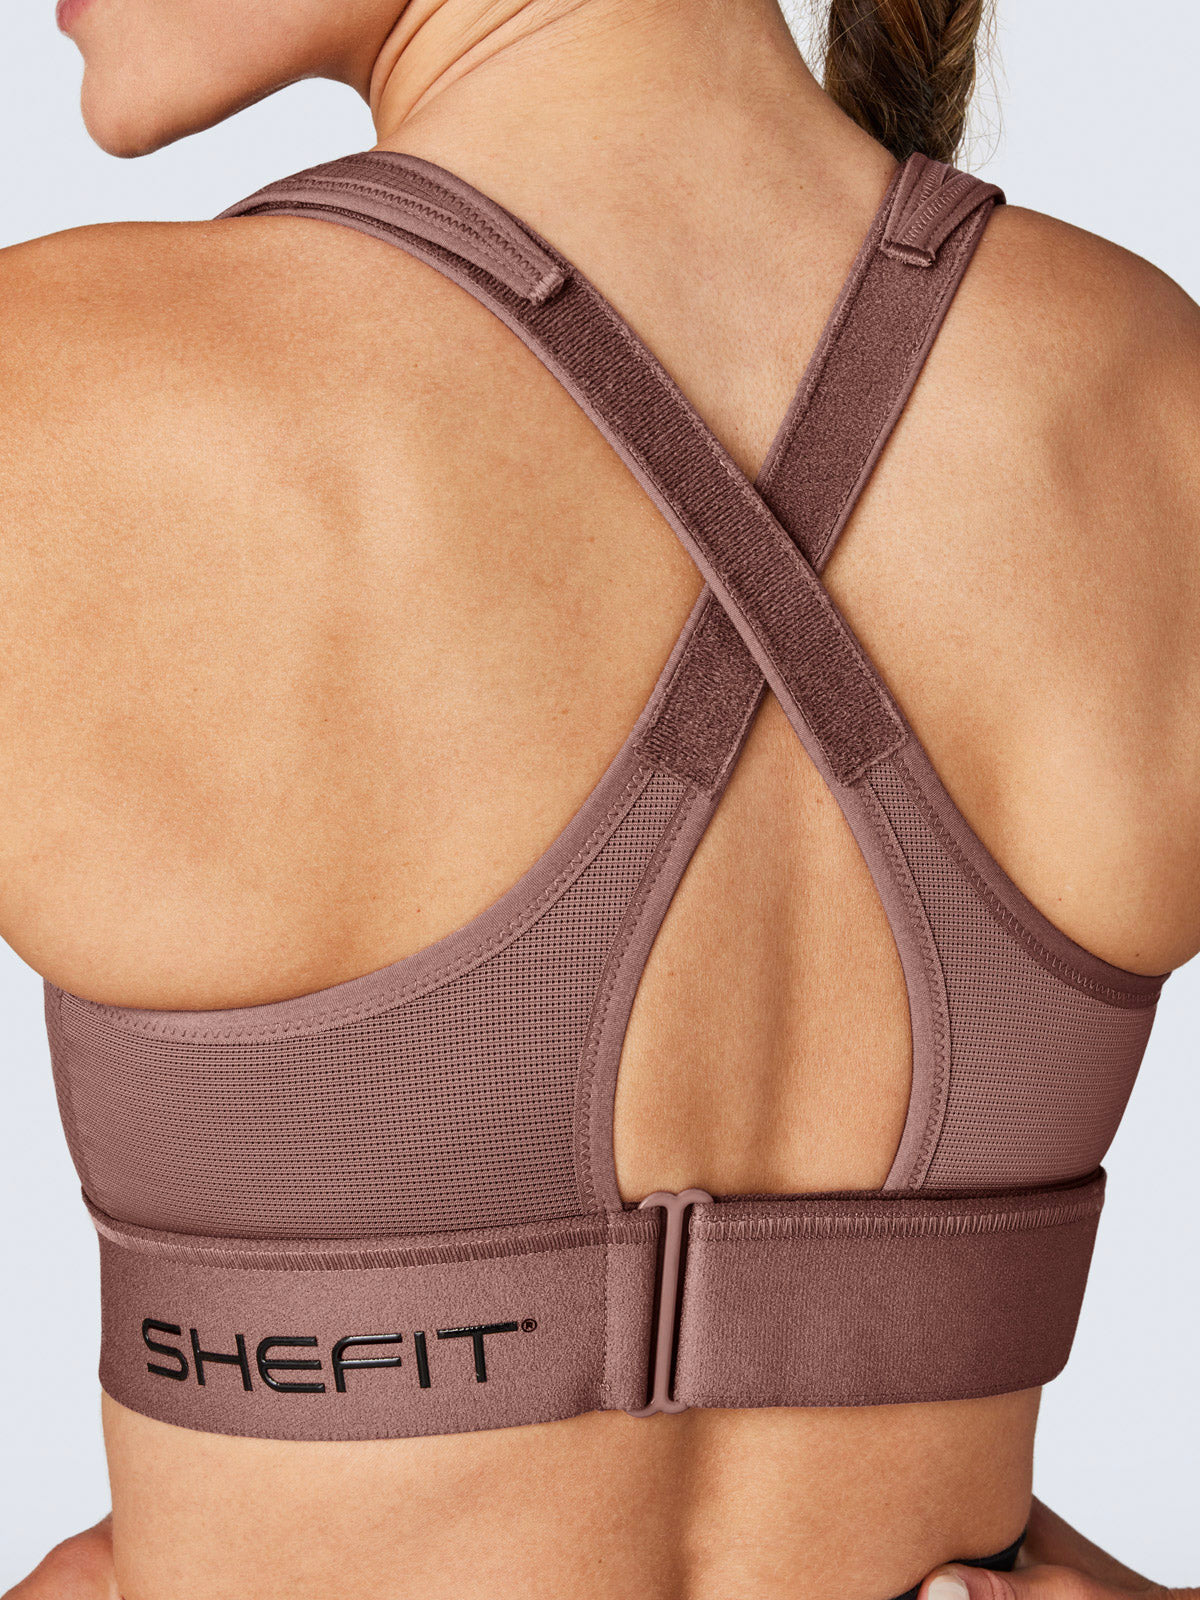 Shefit sports bra size - Gem